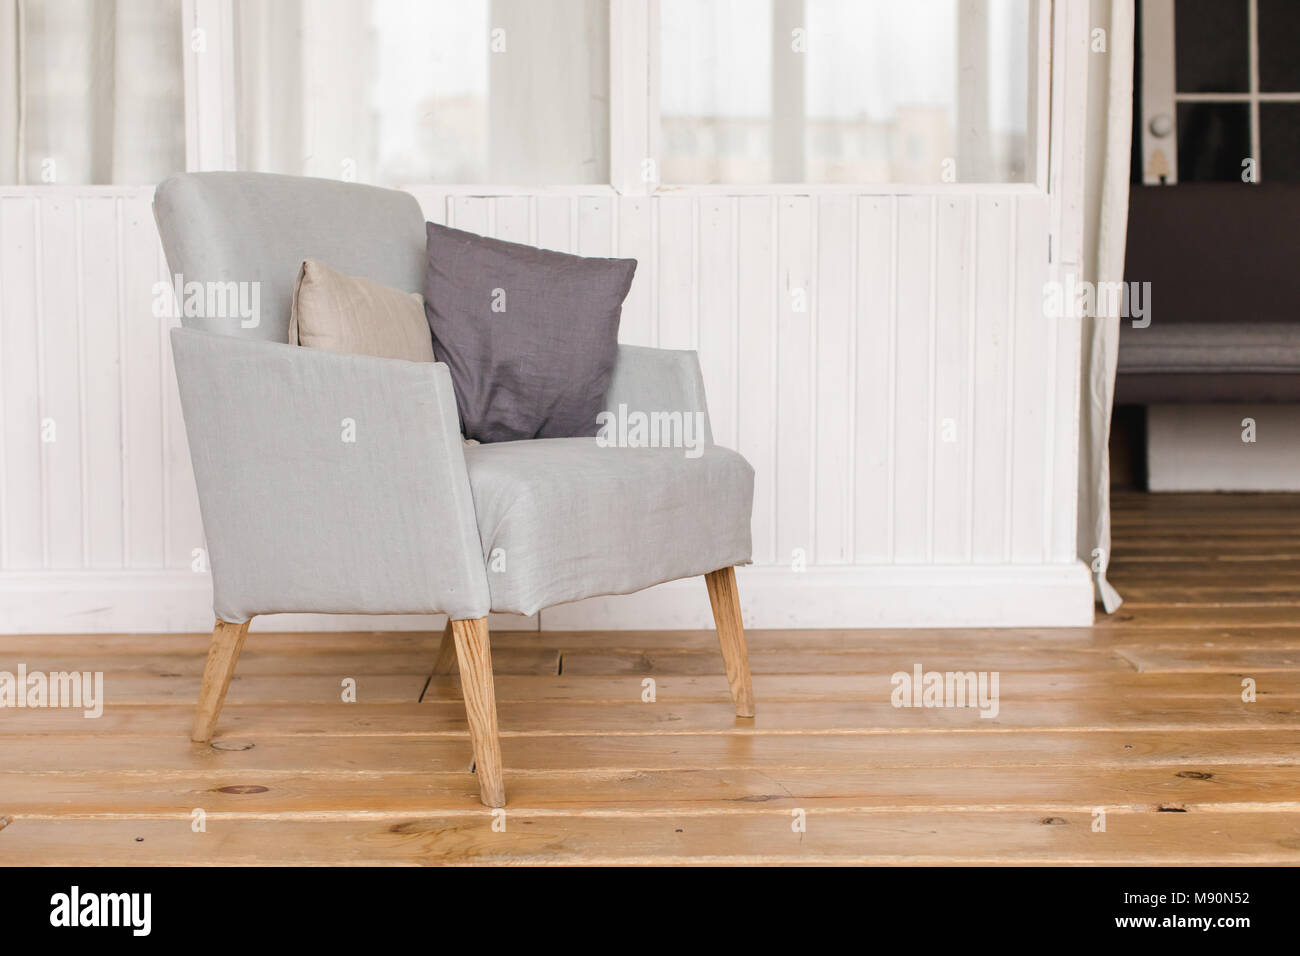 Innere Aufnahme der einfachen bequemen Sessel mit Kissen auf Holzboden Stockfoto